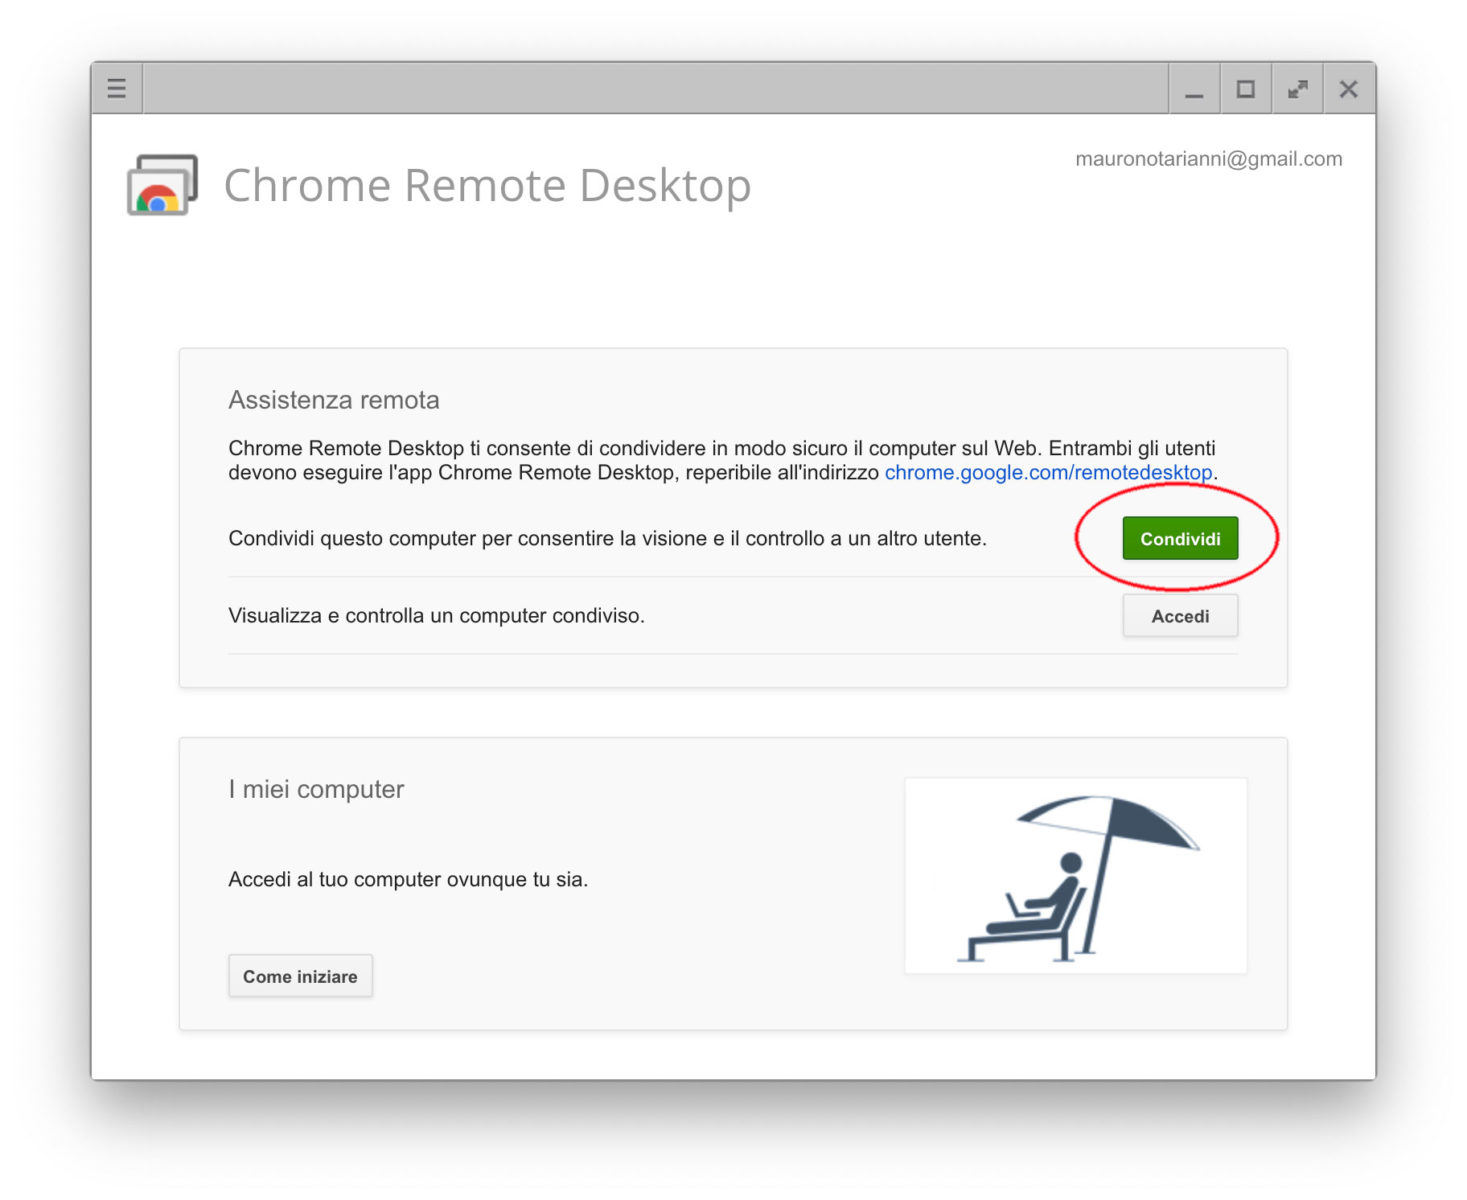 Condividere un computer in remoto con Chrome Remote Desktop